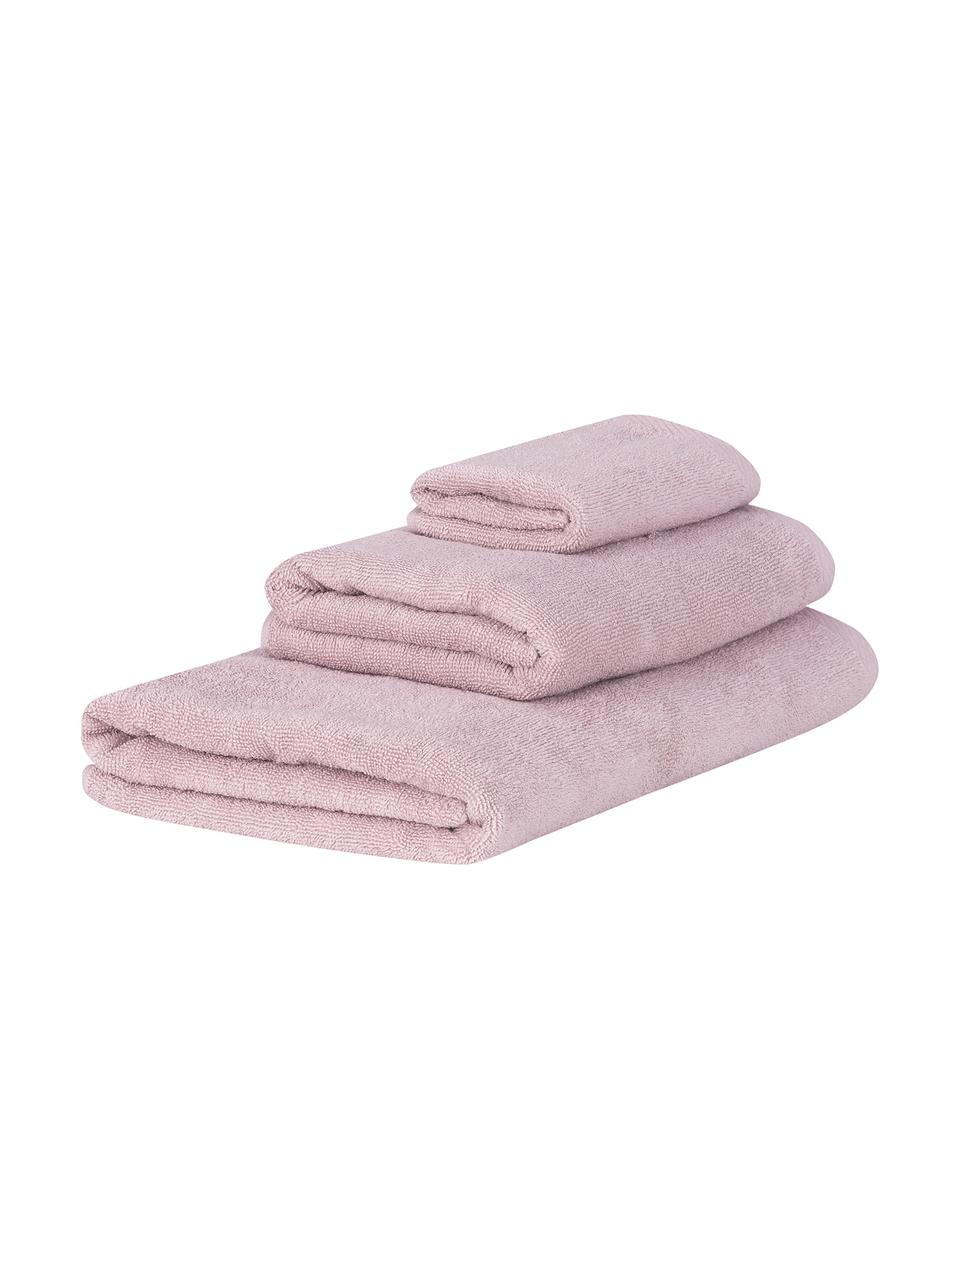 Sada ručníků Comfort, 3 díly, Starorůžová, Sada s různými velikostmi